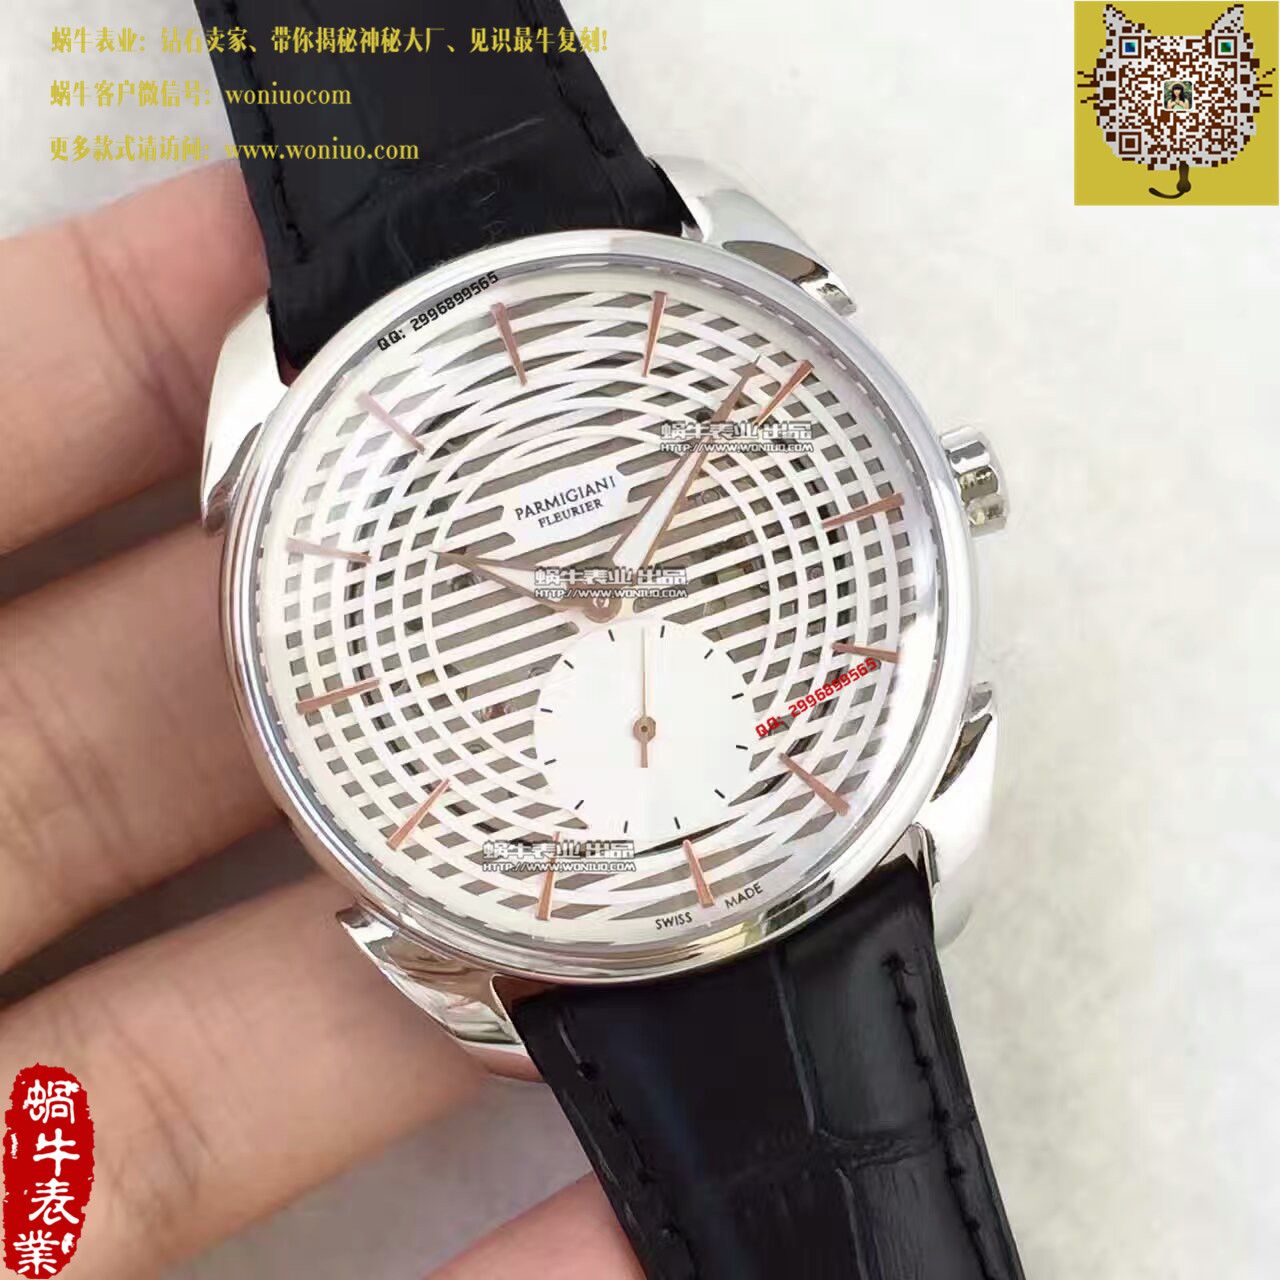 【1:1超A复刻手表】帕玛强尼Tonda系列Tonda 1950腕表 / PM023